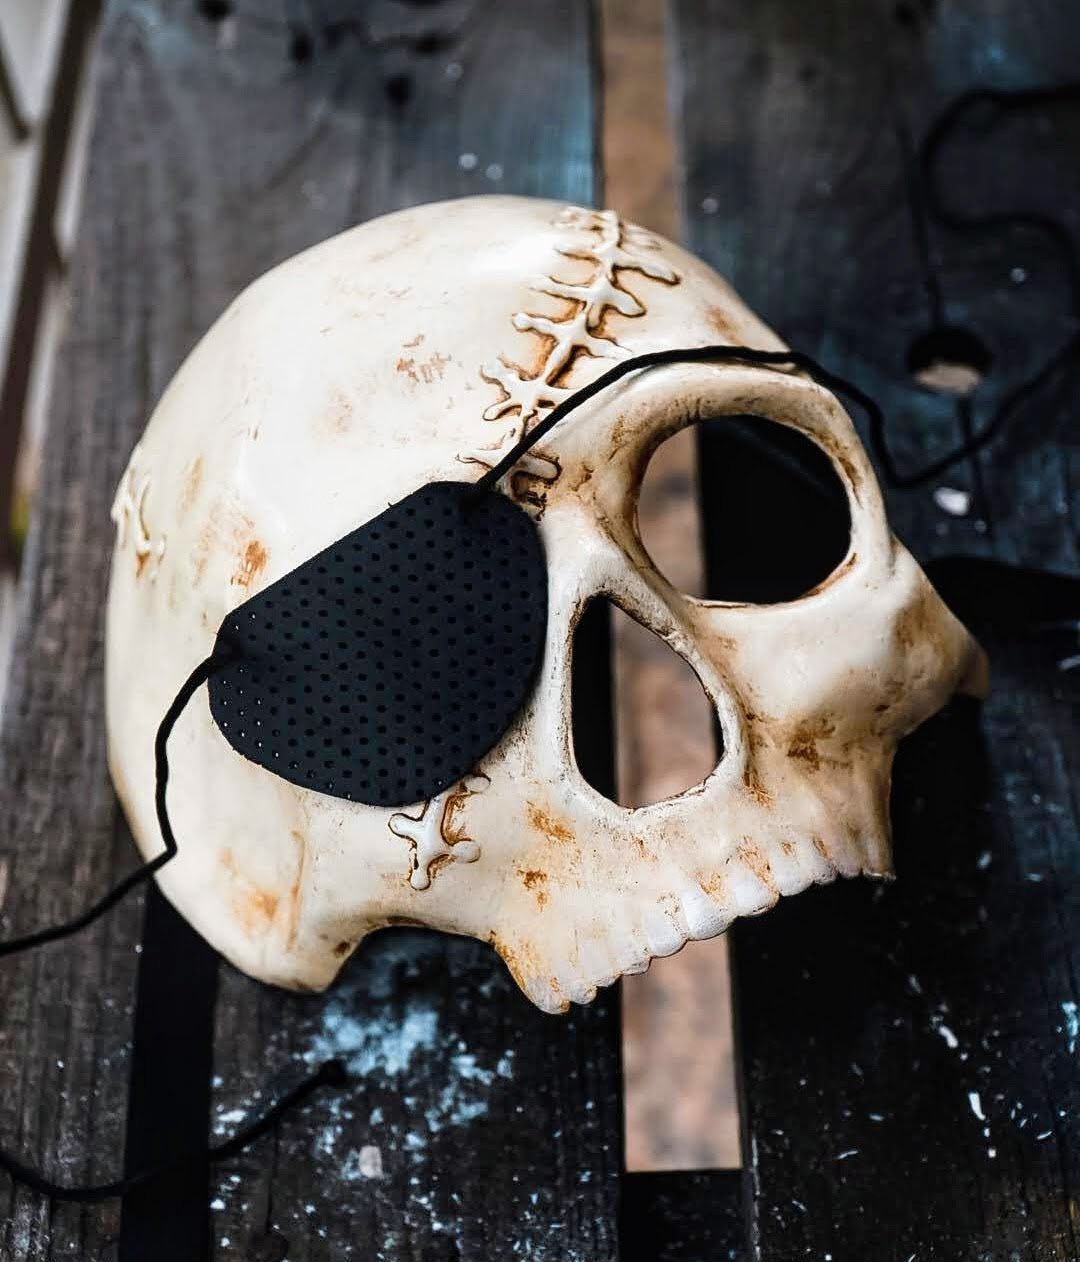 Máscara lista - Máscara de calavera pirata estilo veneciano